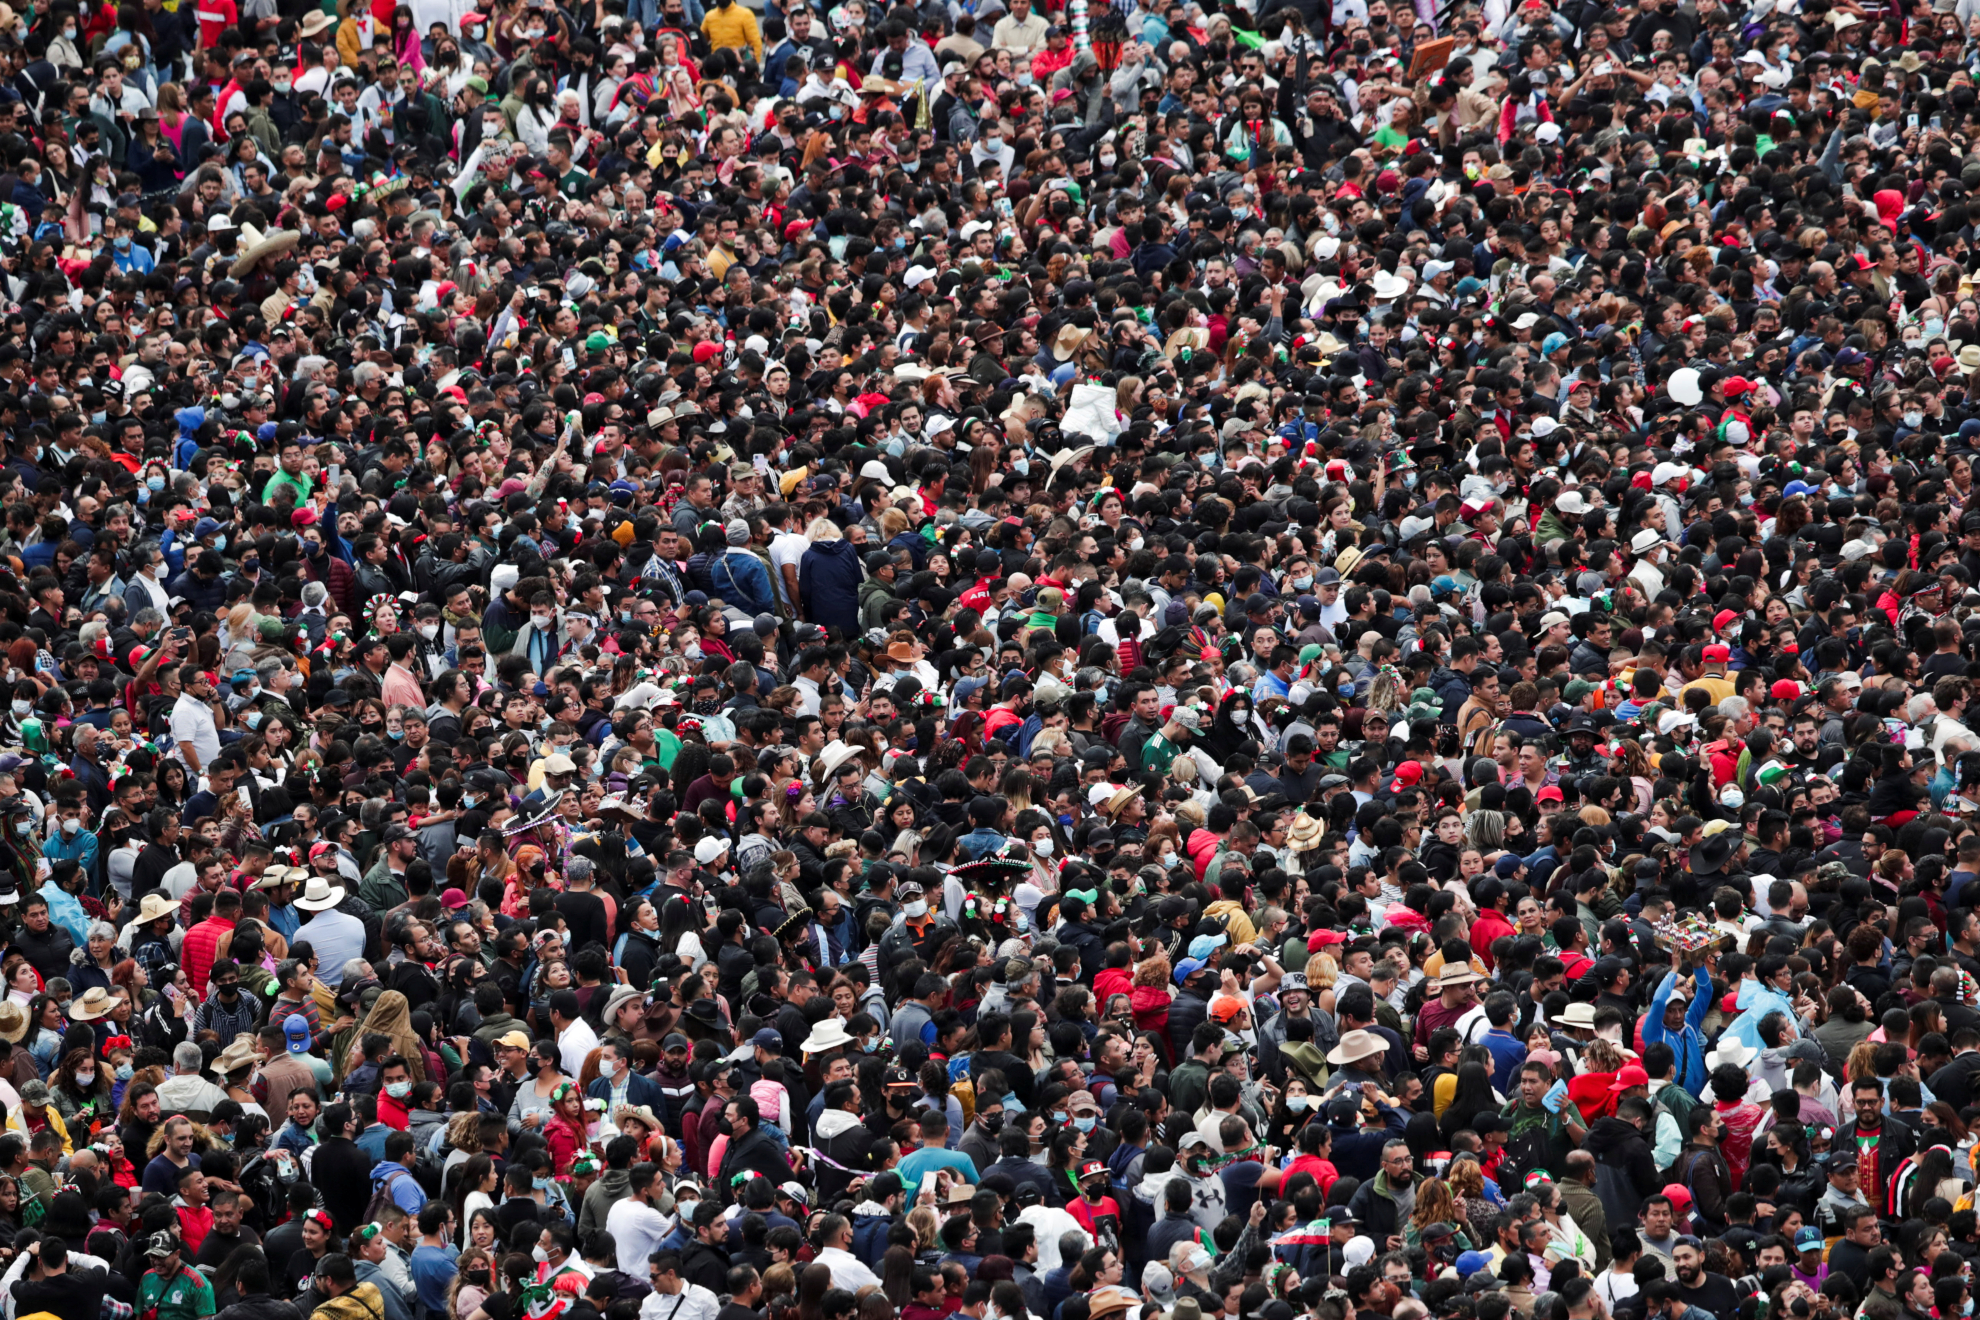 Grupo Firme rompió récord de asistencia, acuden 280 mil personas al Zócalo para ver su concierto